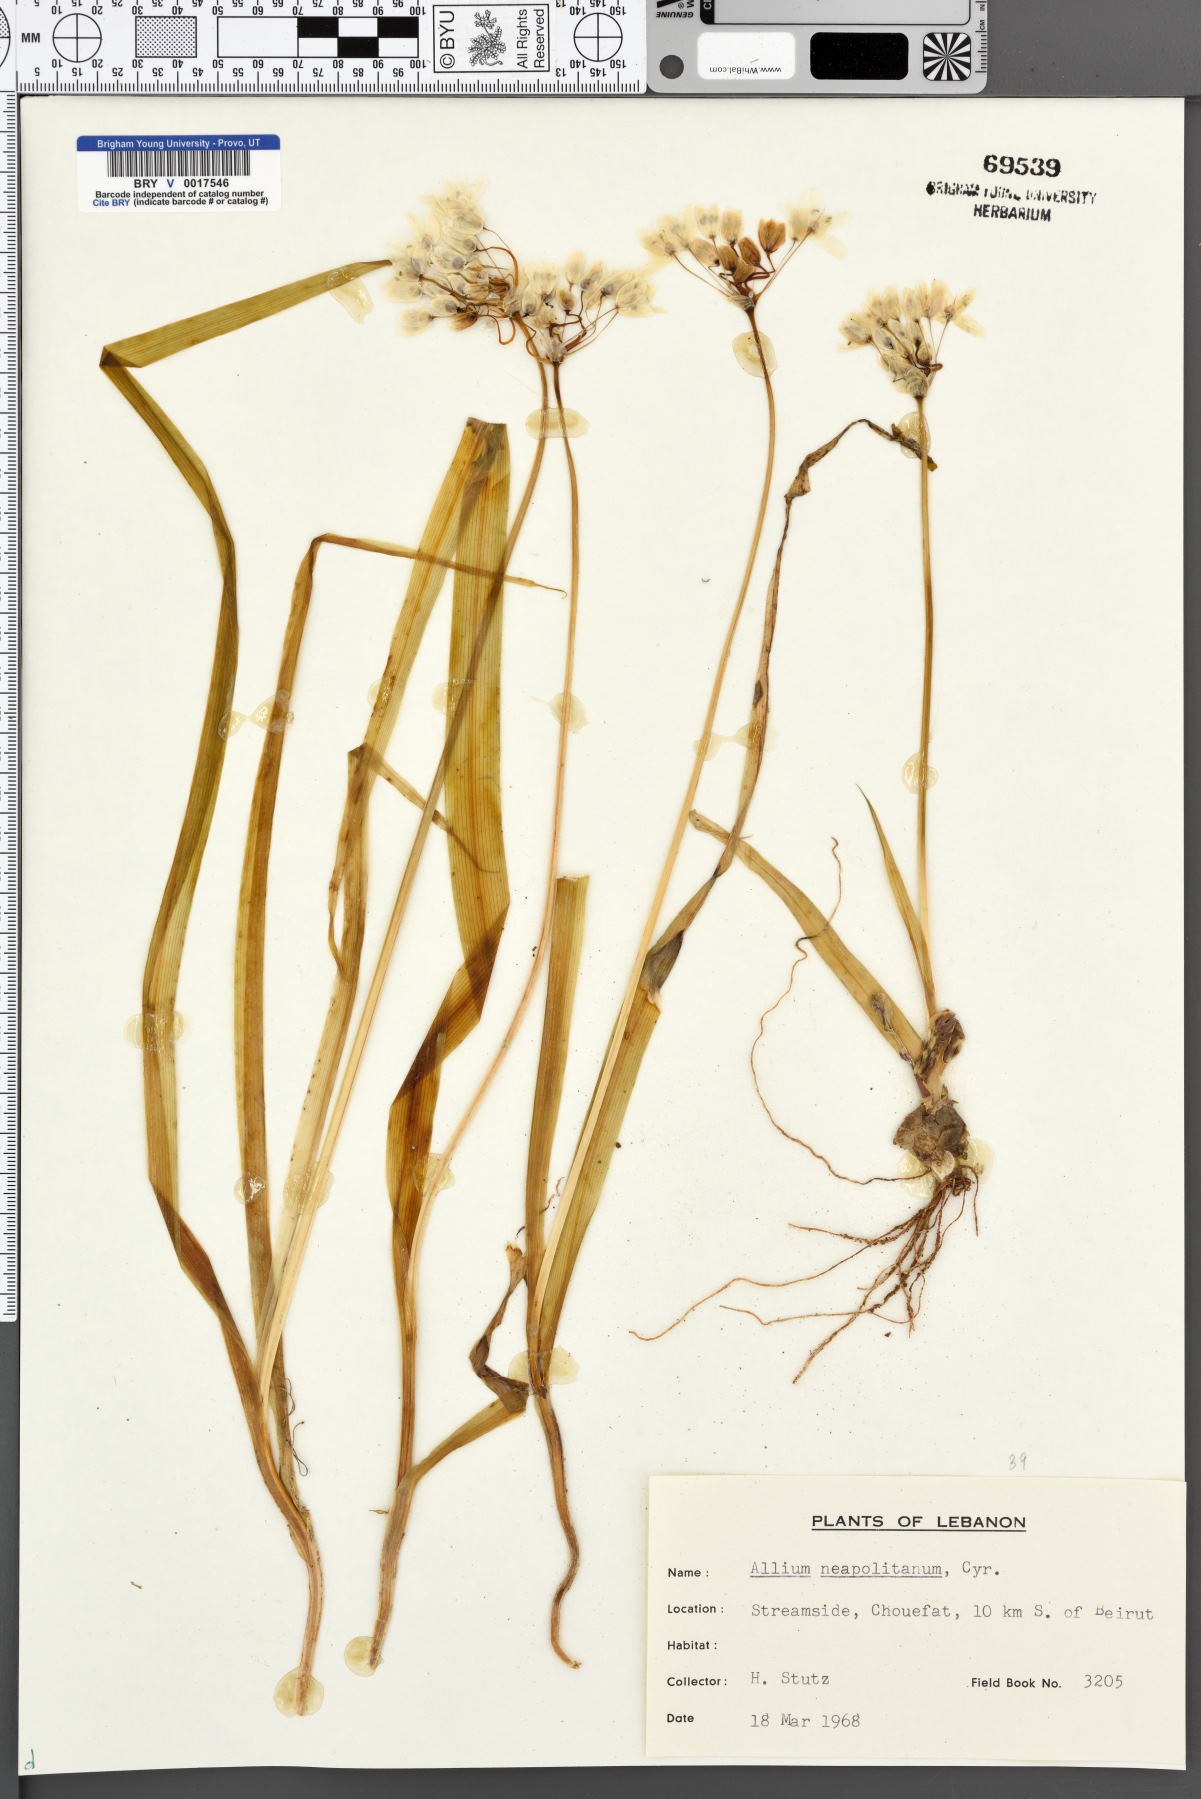 Allium neopolitanum image